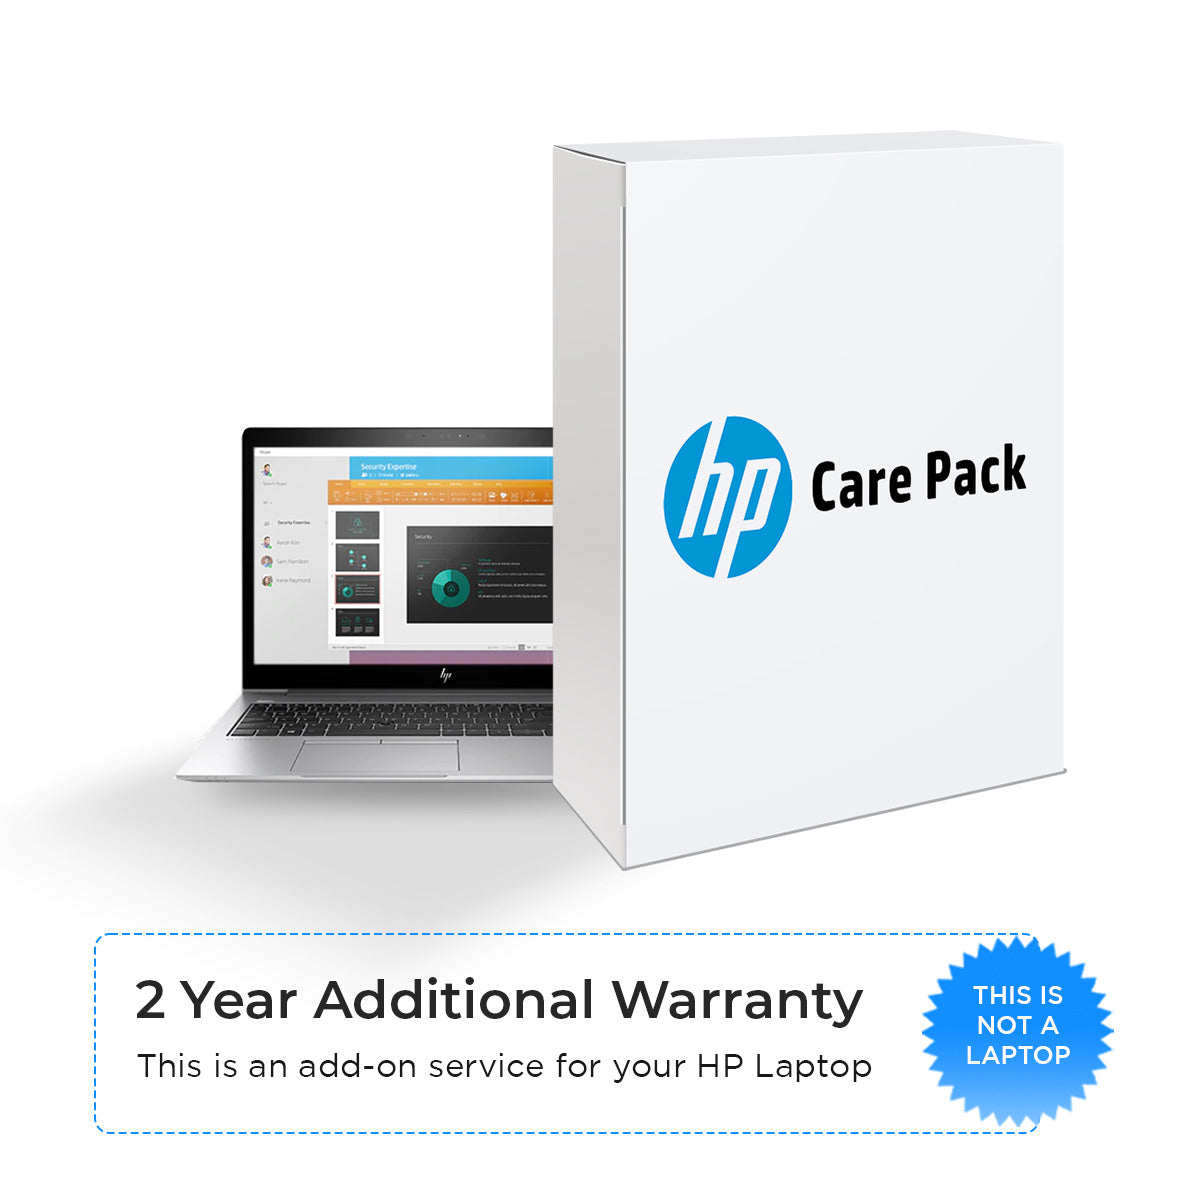 एचपी केयर पैक 2 साल की अतिरिक्त वारंटी अगले दिन ऑनसाइट सपोर्ट के साथ स्पेक्टर लैपटॉप के लिए - लैपटॉप नहीं